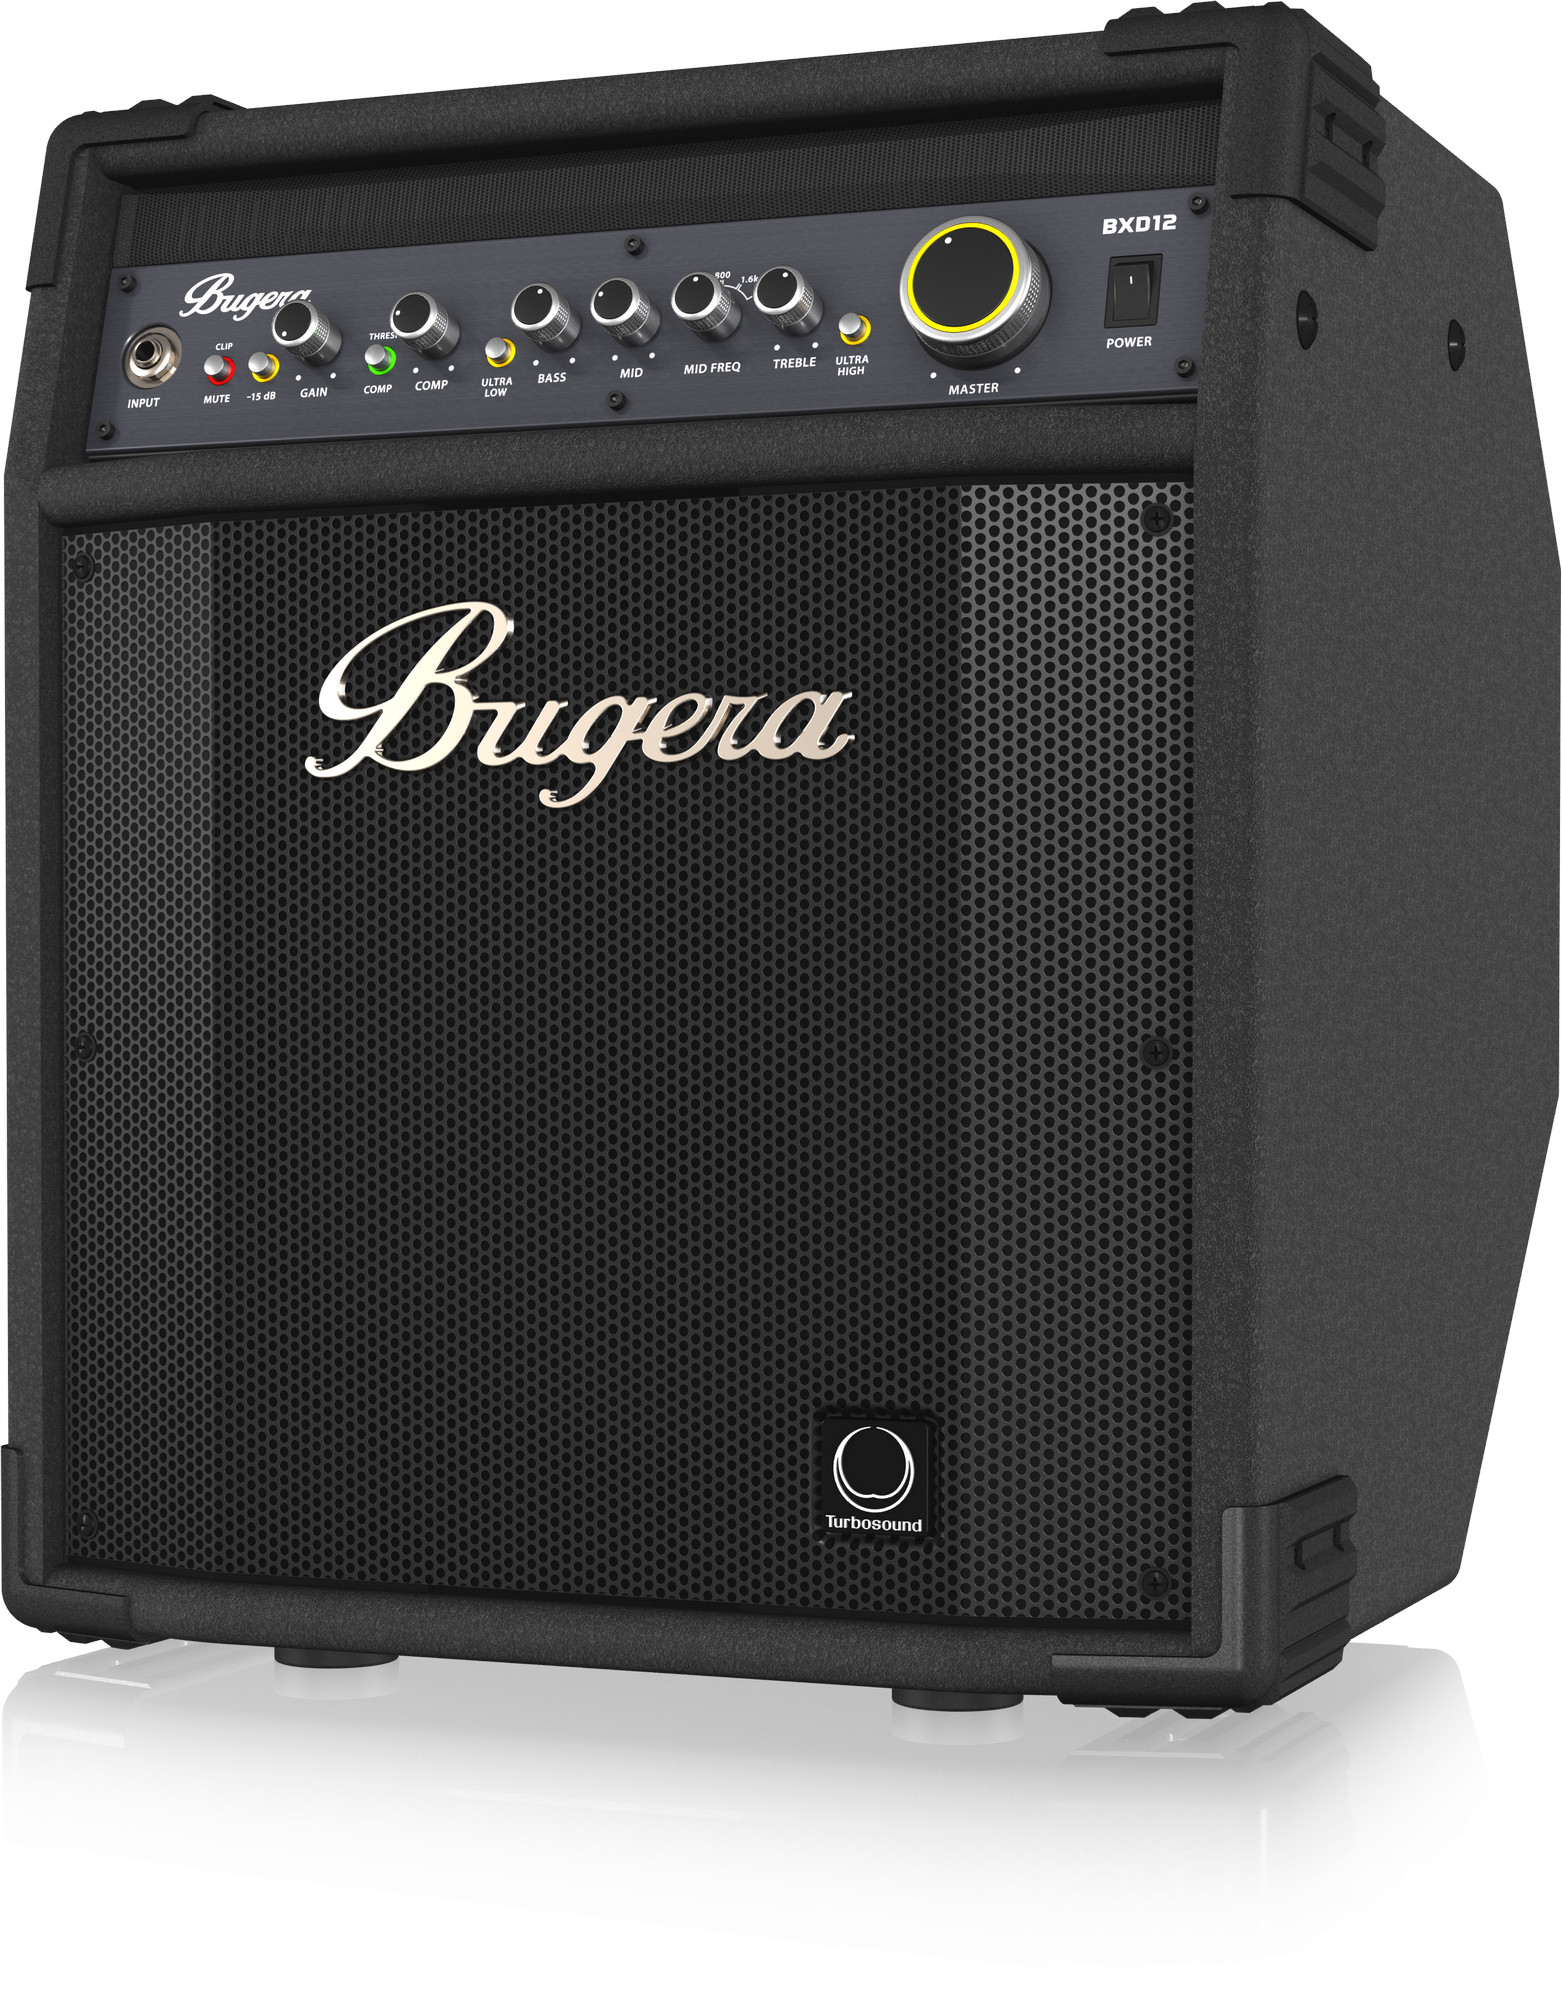 LOA KÈM AMPLY BUGERA BXD12 1000-Watt 2-Channel Bass Combo Amplifier Black-Hàng Chính Hãng